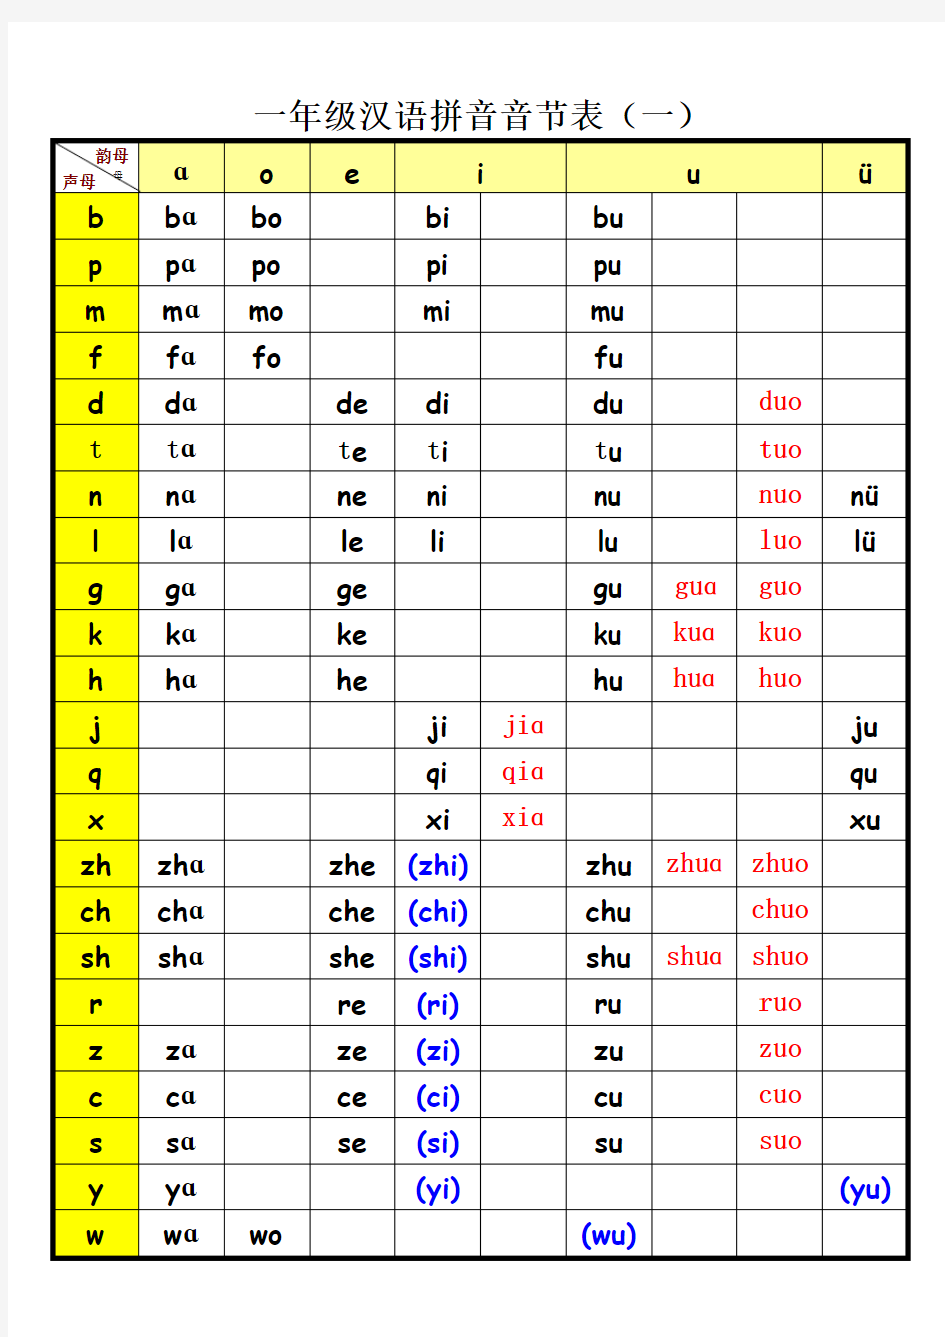 一年级汉语拼音音节表(完整版)